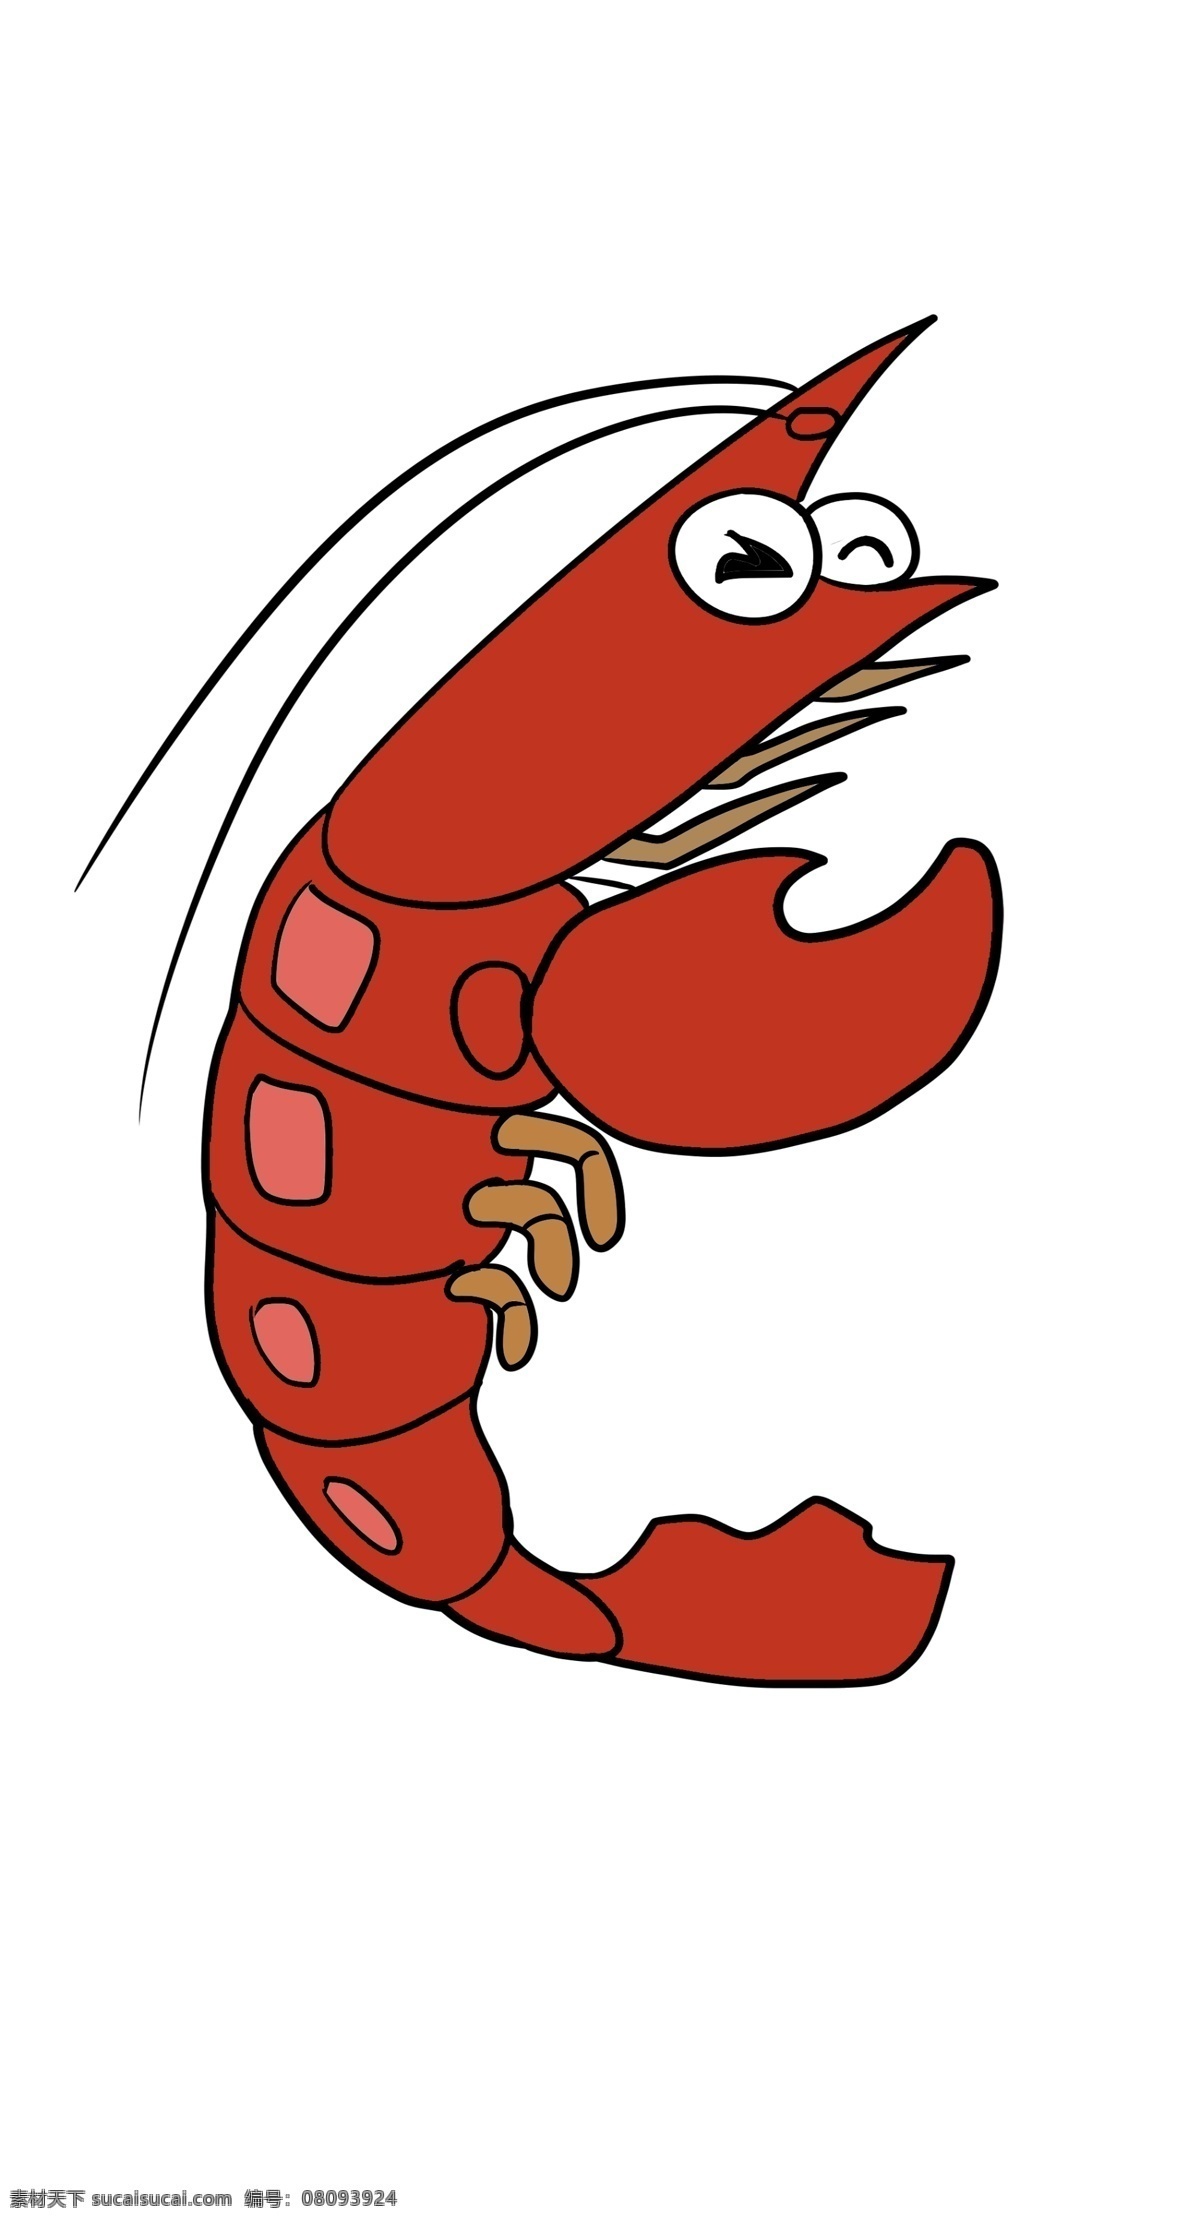 麻辣 龙虾 装饰 插画 红色的龙虾 麻辣龙虾 漂亮的龙虾 创意龙虾 立体龙虾 卡通龙虾 煮熟的龙虾